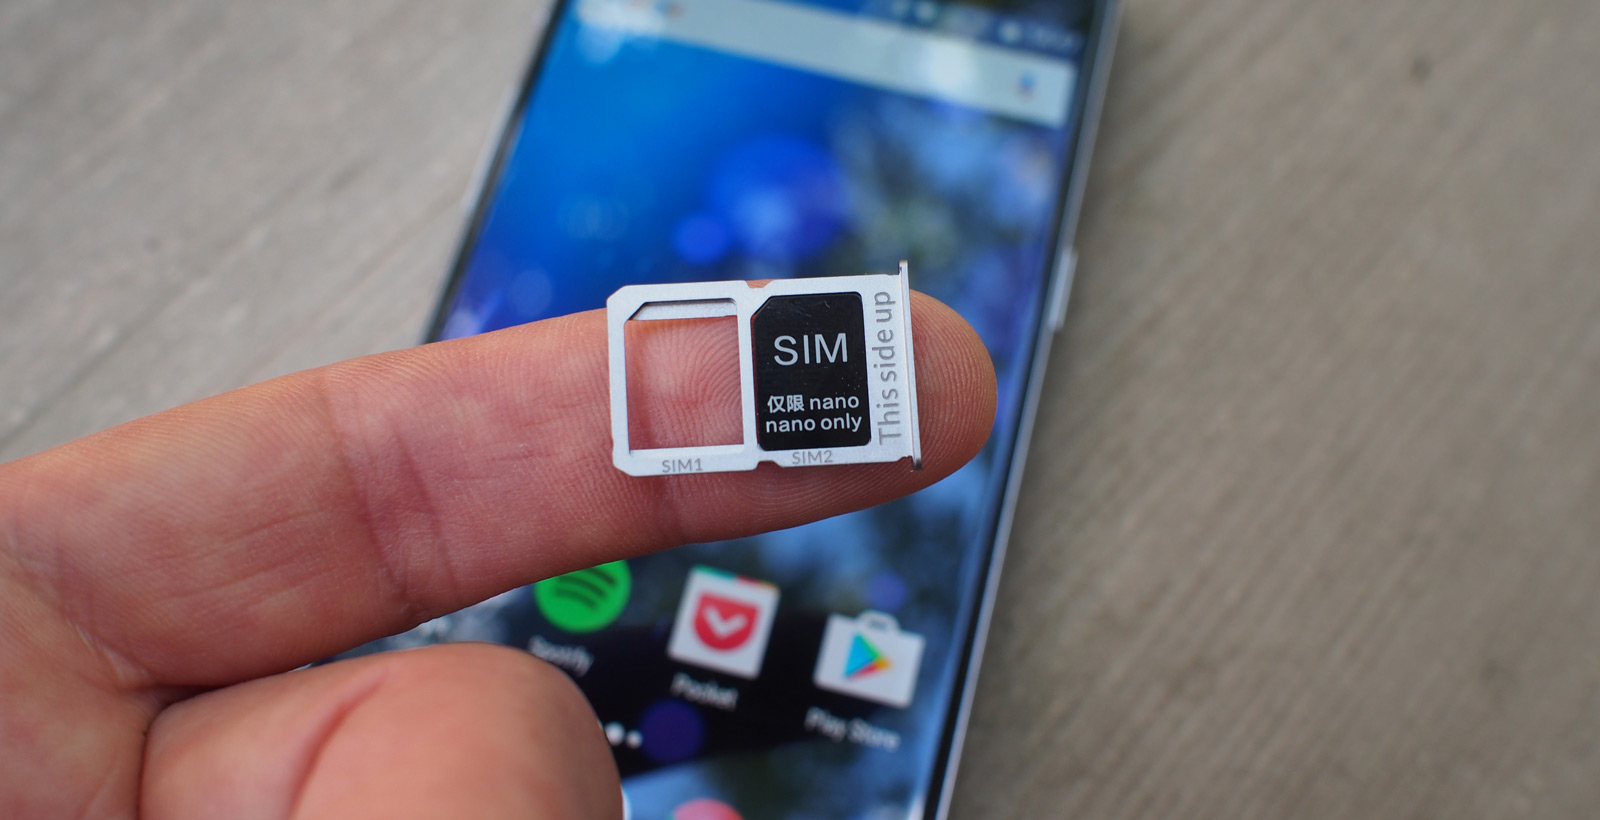 Le OnePlus 3 est notamment pourvu d'un lecteur à double SIM.